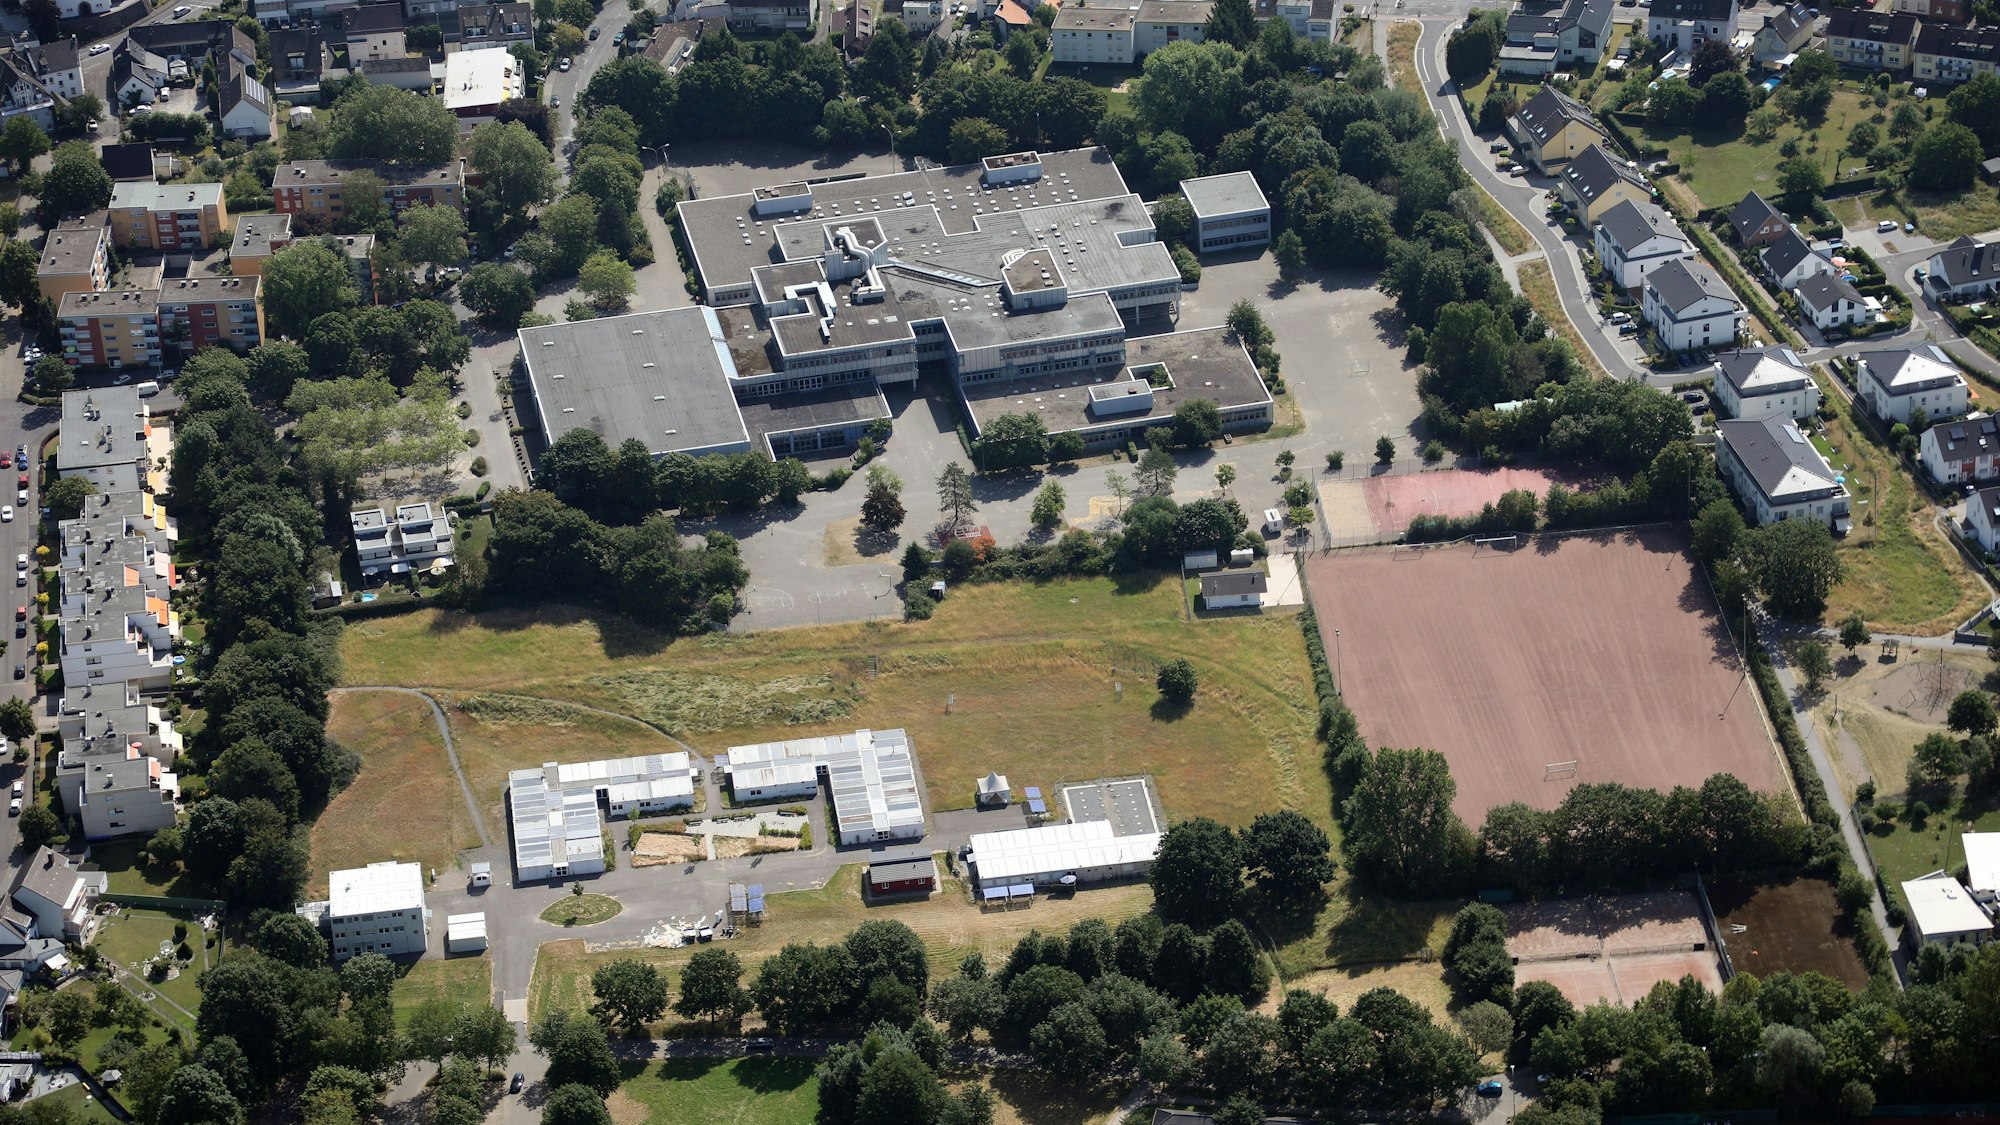 Luftbild von der Integrierten Gesamtschule Paffrath in Bergisch Gladbach.